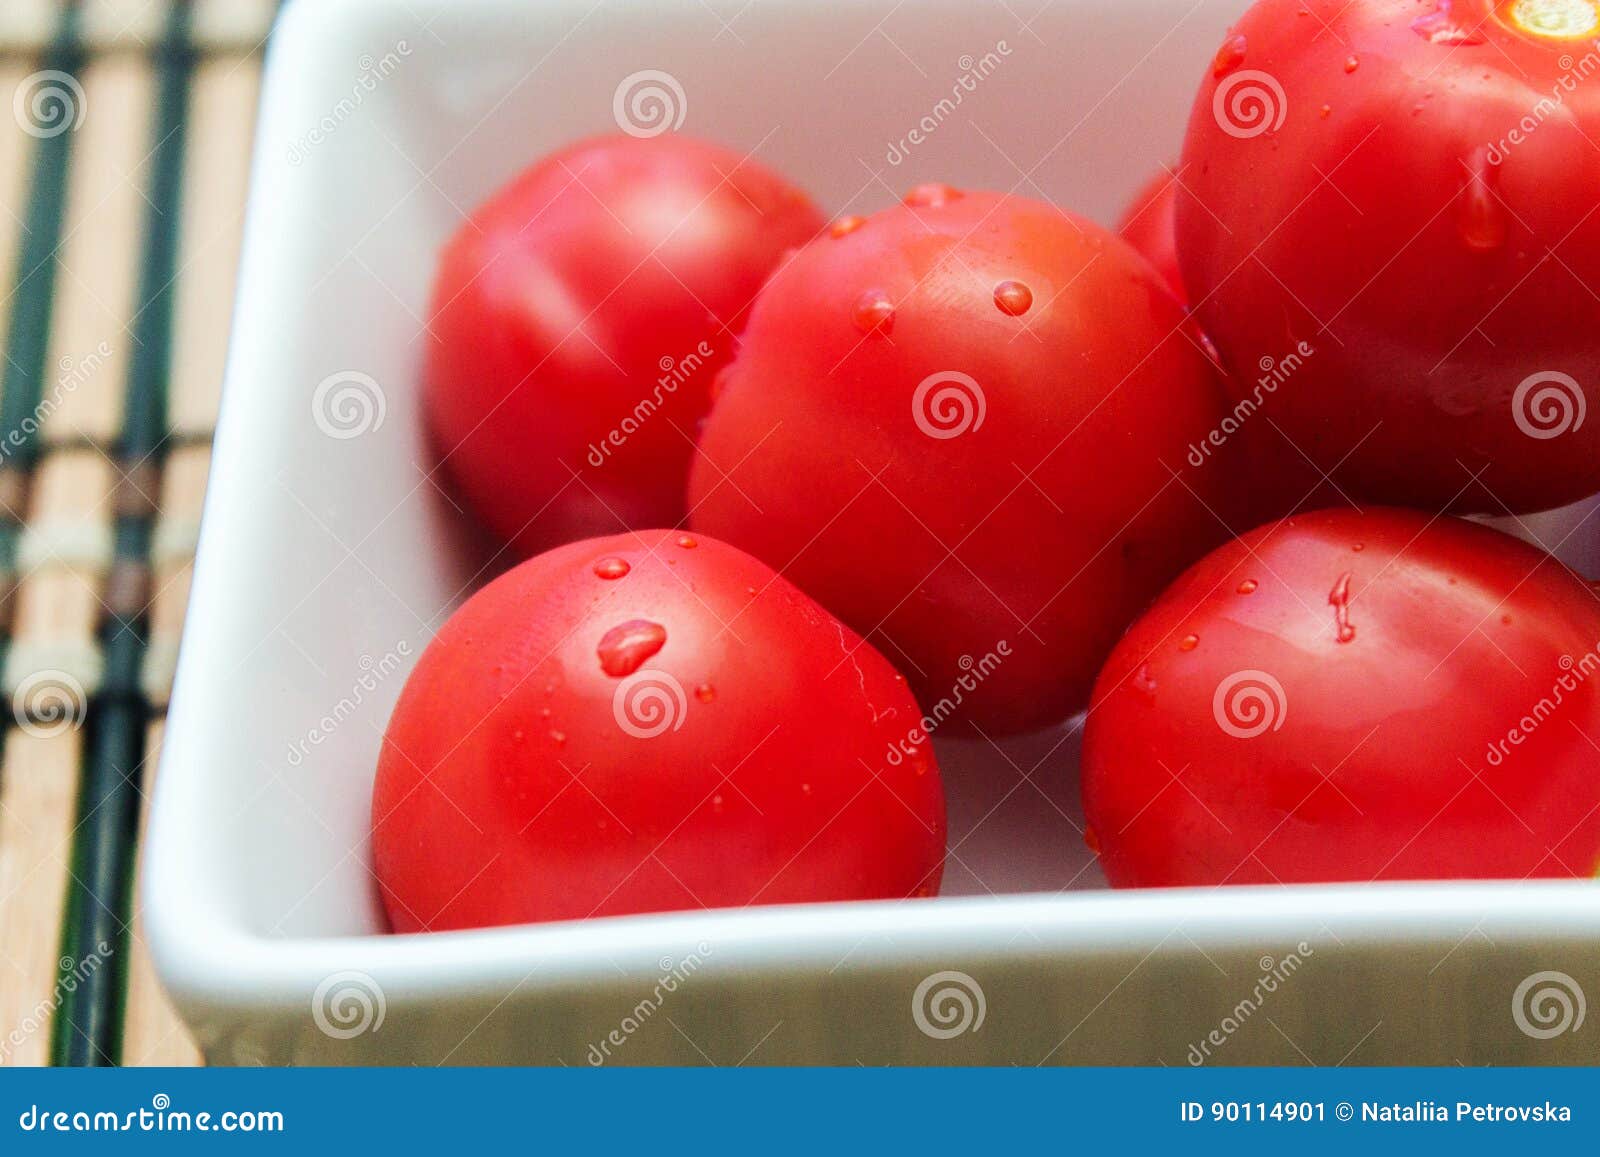 tomato plate